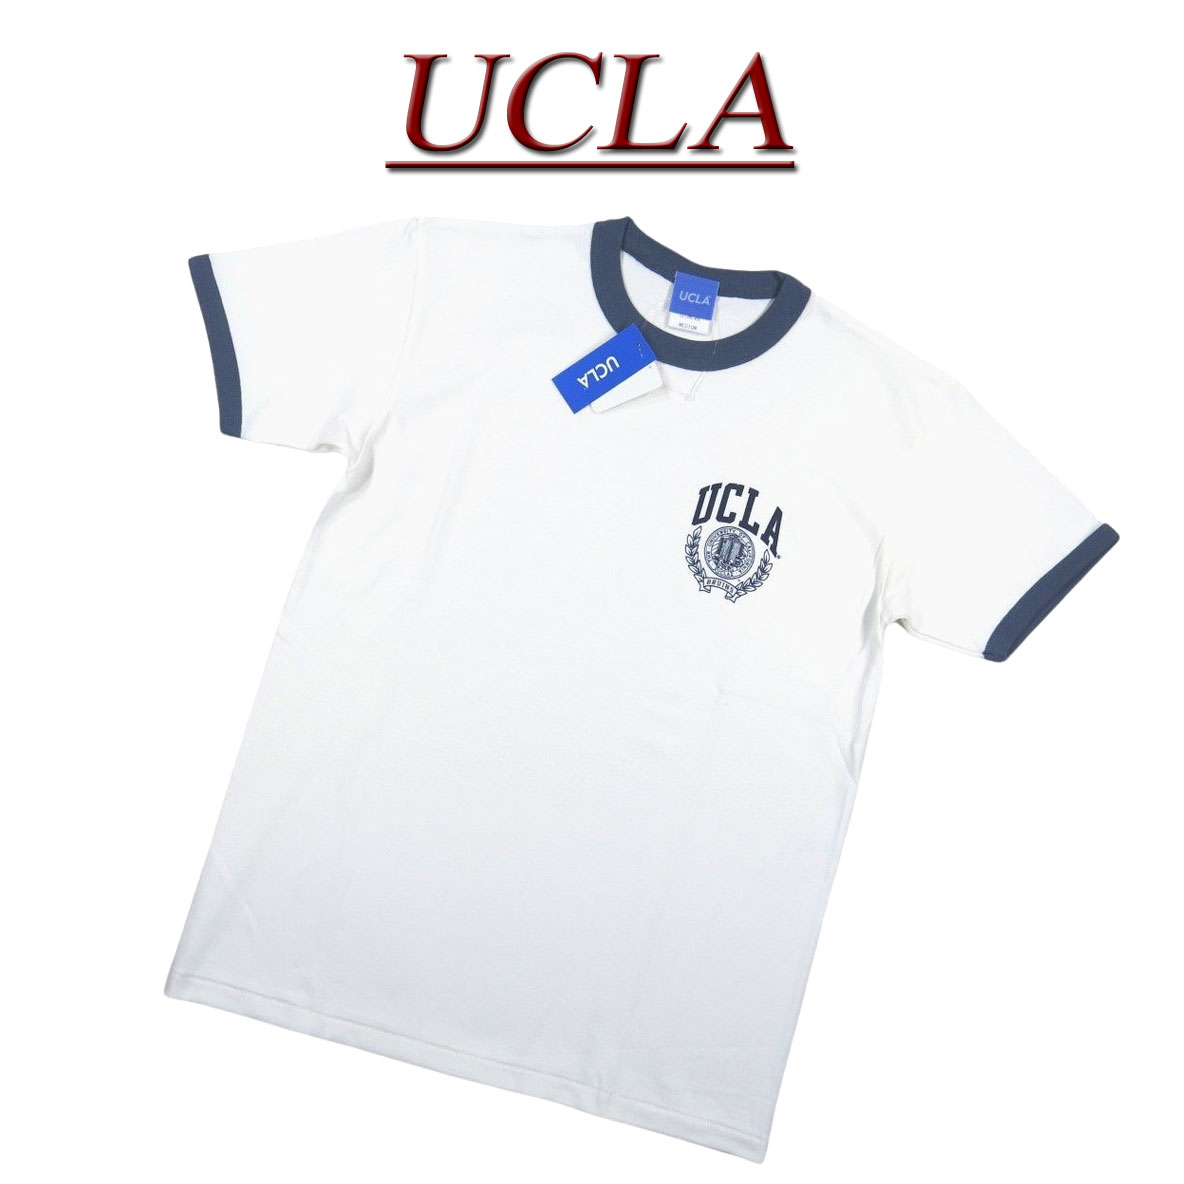  jf601 新品 UCLA カリフォルニア大学 ロサンゼルス校 カレッジプリント 半袖 リンガーTシャツ UCLA-0530 メンズ S/S COLLEGE T-SHIRT ユーシーエルエー ティーシャツ アメカジ 